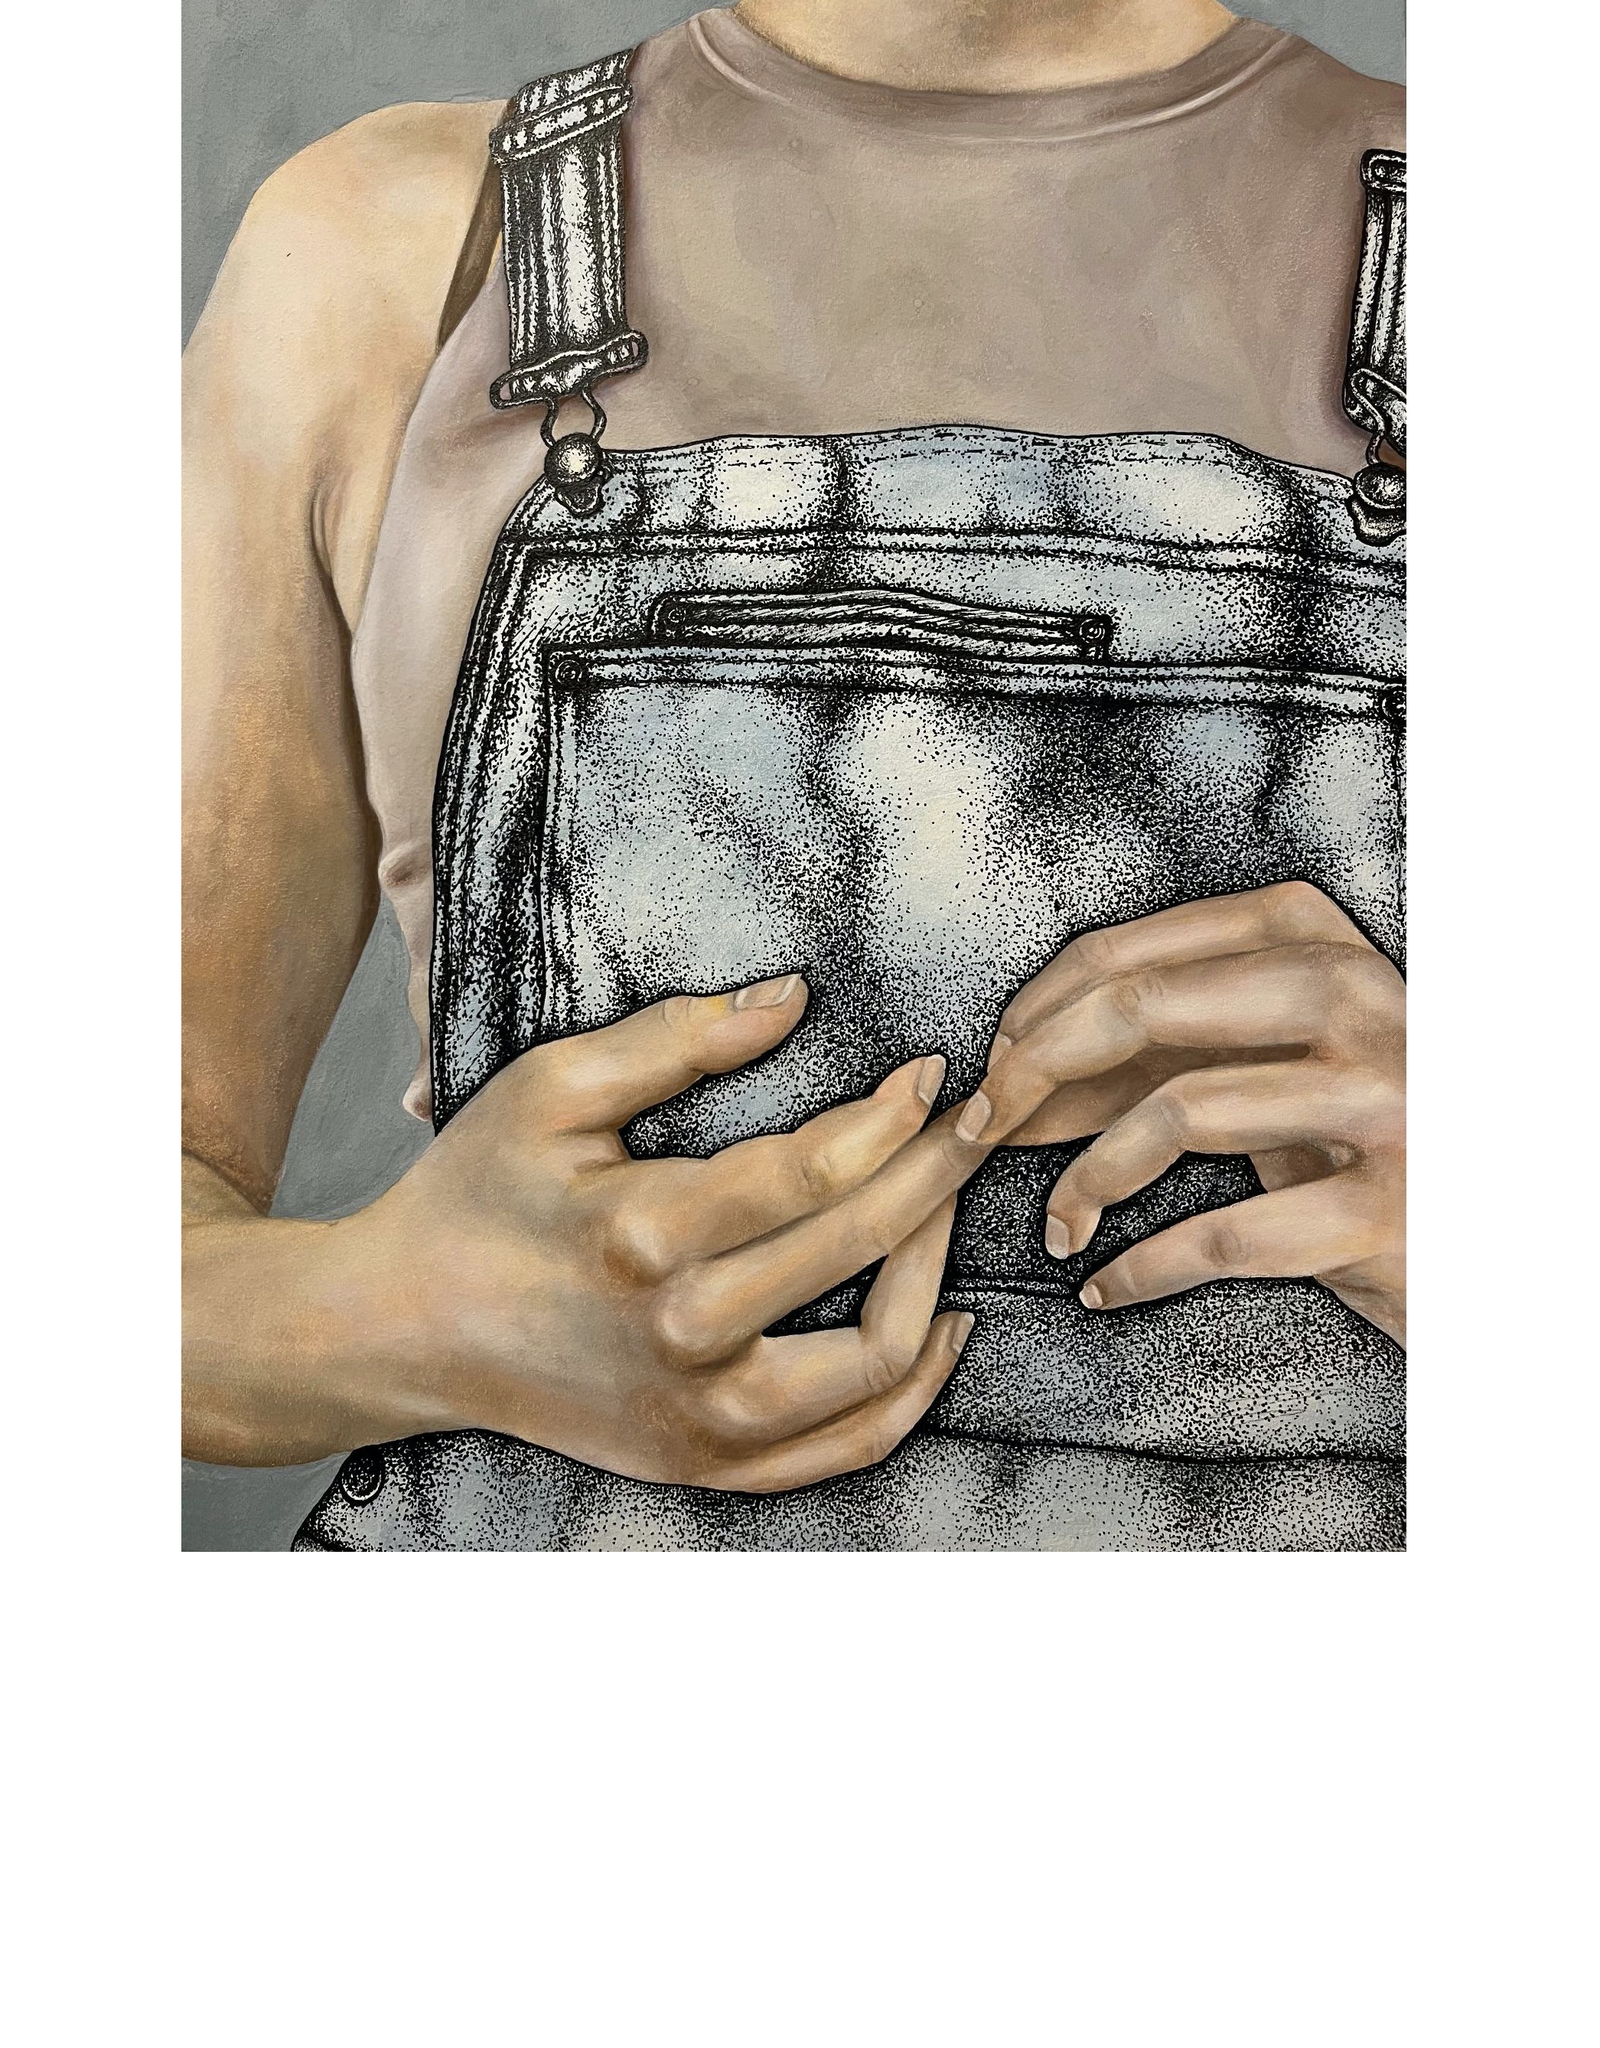 Maya Krueger Art RESERVED: "vulnerable" by Maya Krueger